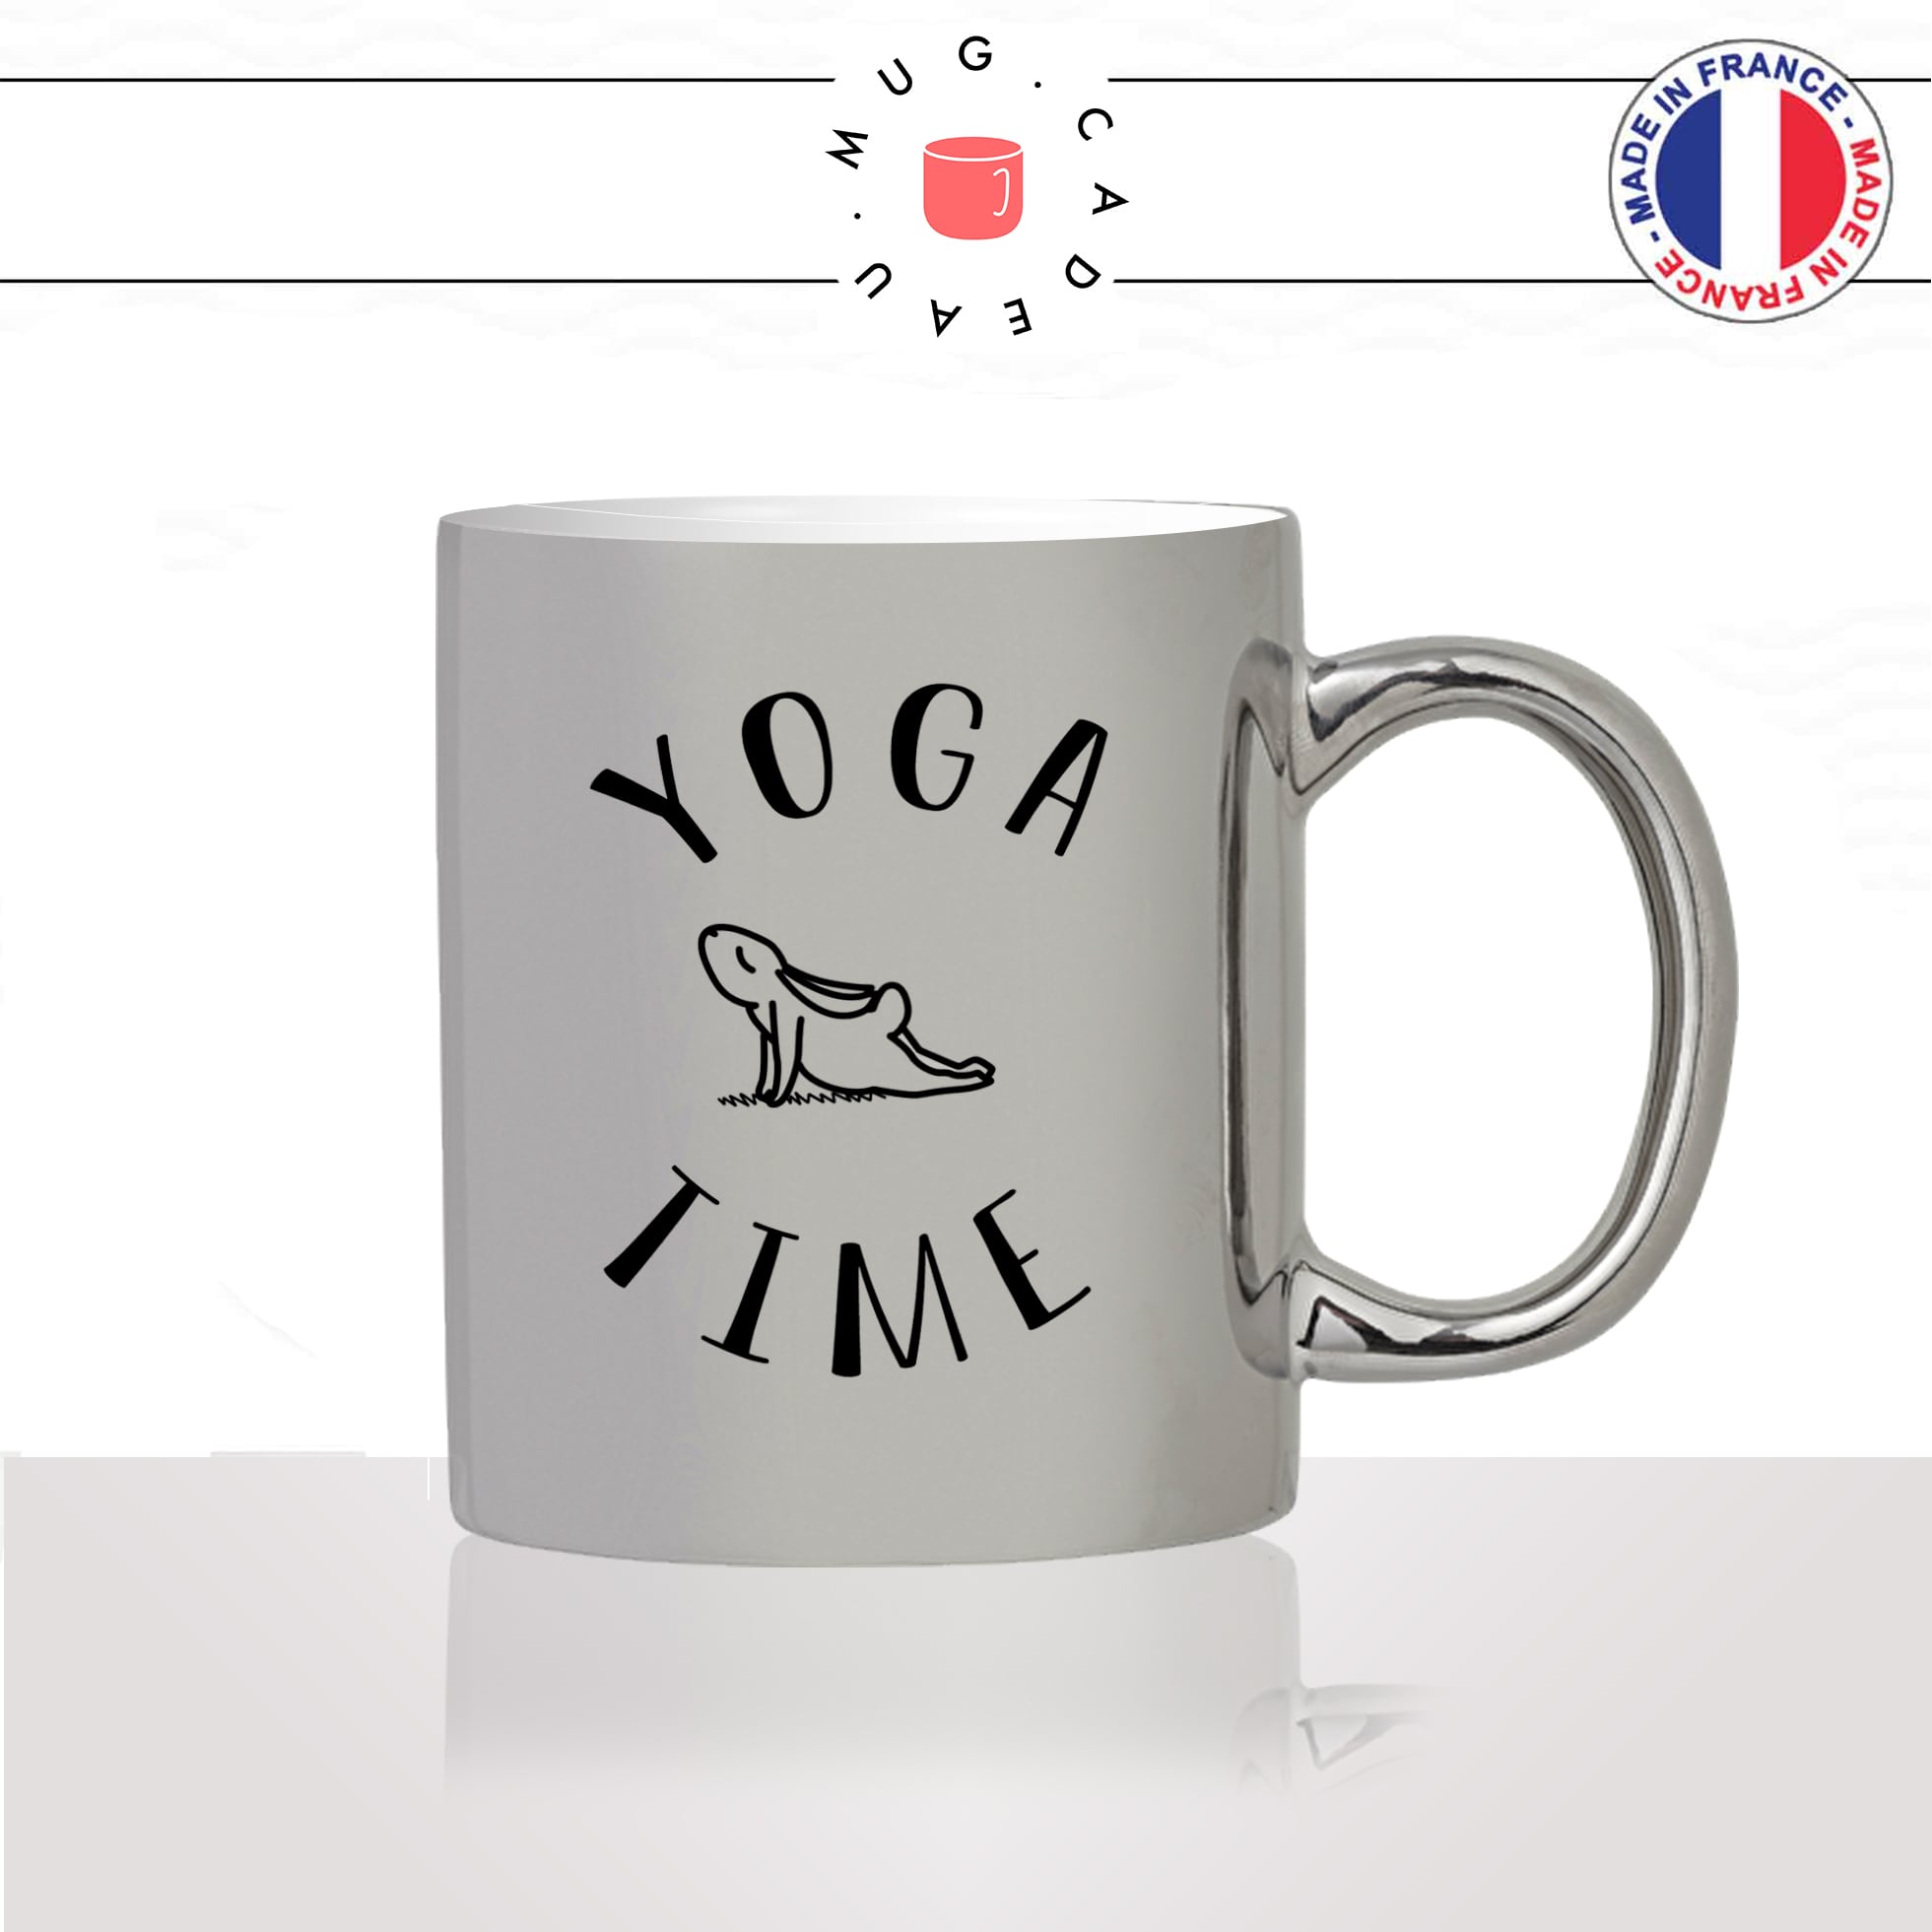 mug-tasse-silver-argenté-argent-lapin-pose-yoga-time-sport-pilate-meditation-mignon-animal-noir-fun-café-thé-idée-cadeau-original-personnalisé2-min